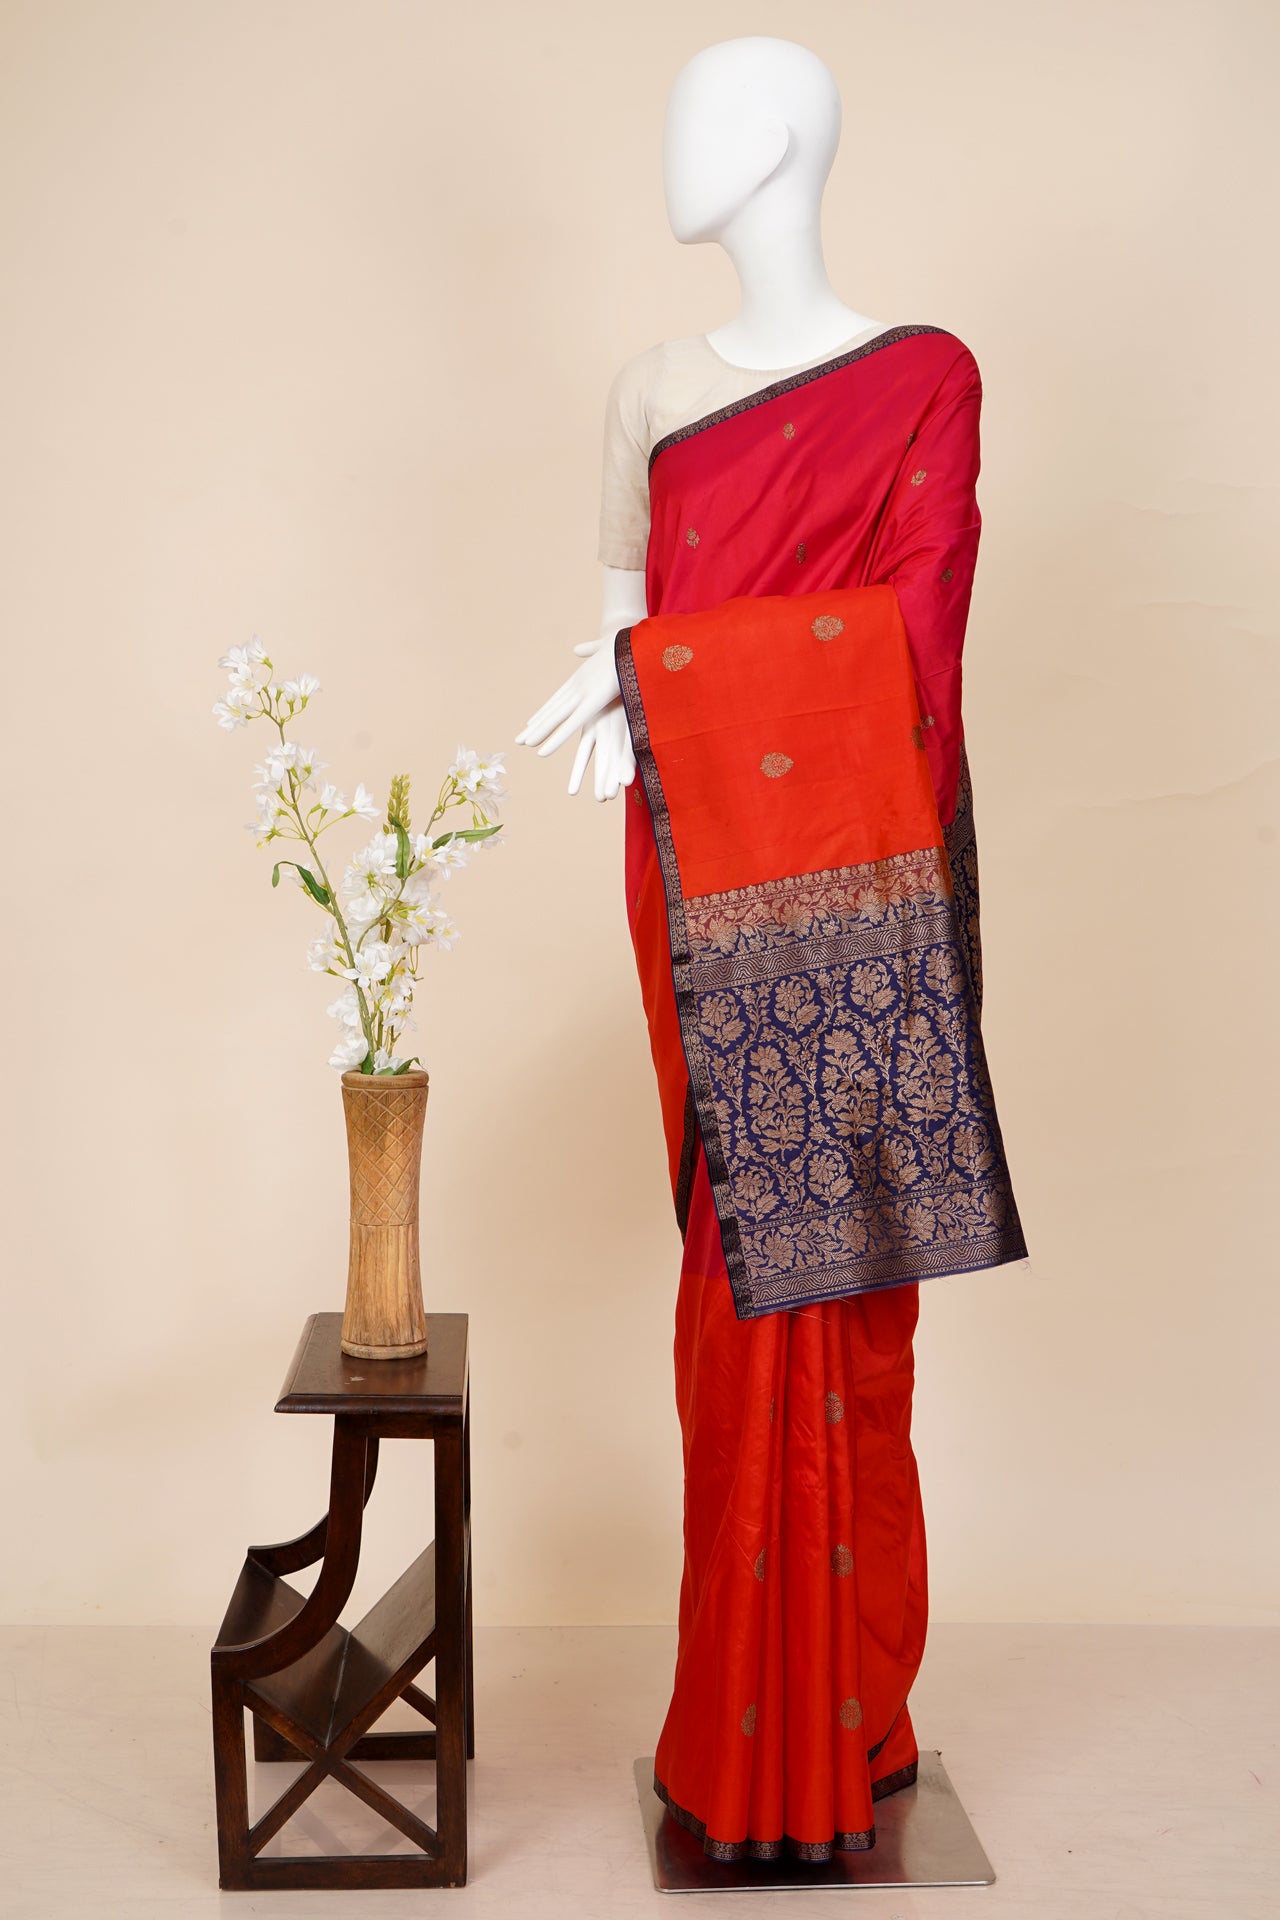 Pink-Orange Color Handwoven Pure Silk Banarasi Saree With Blouse Piece